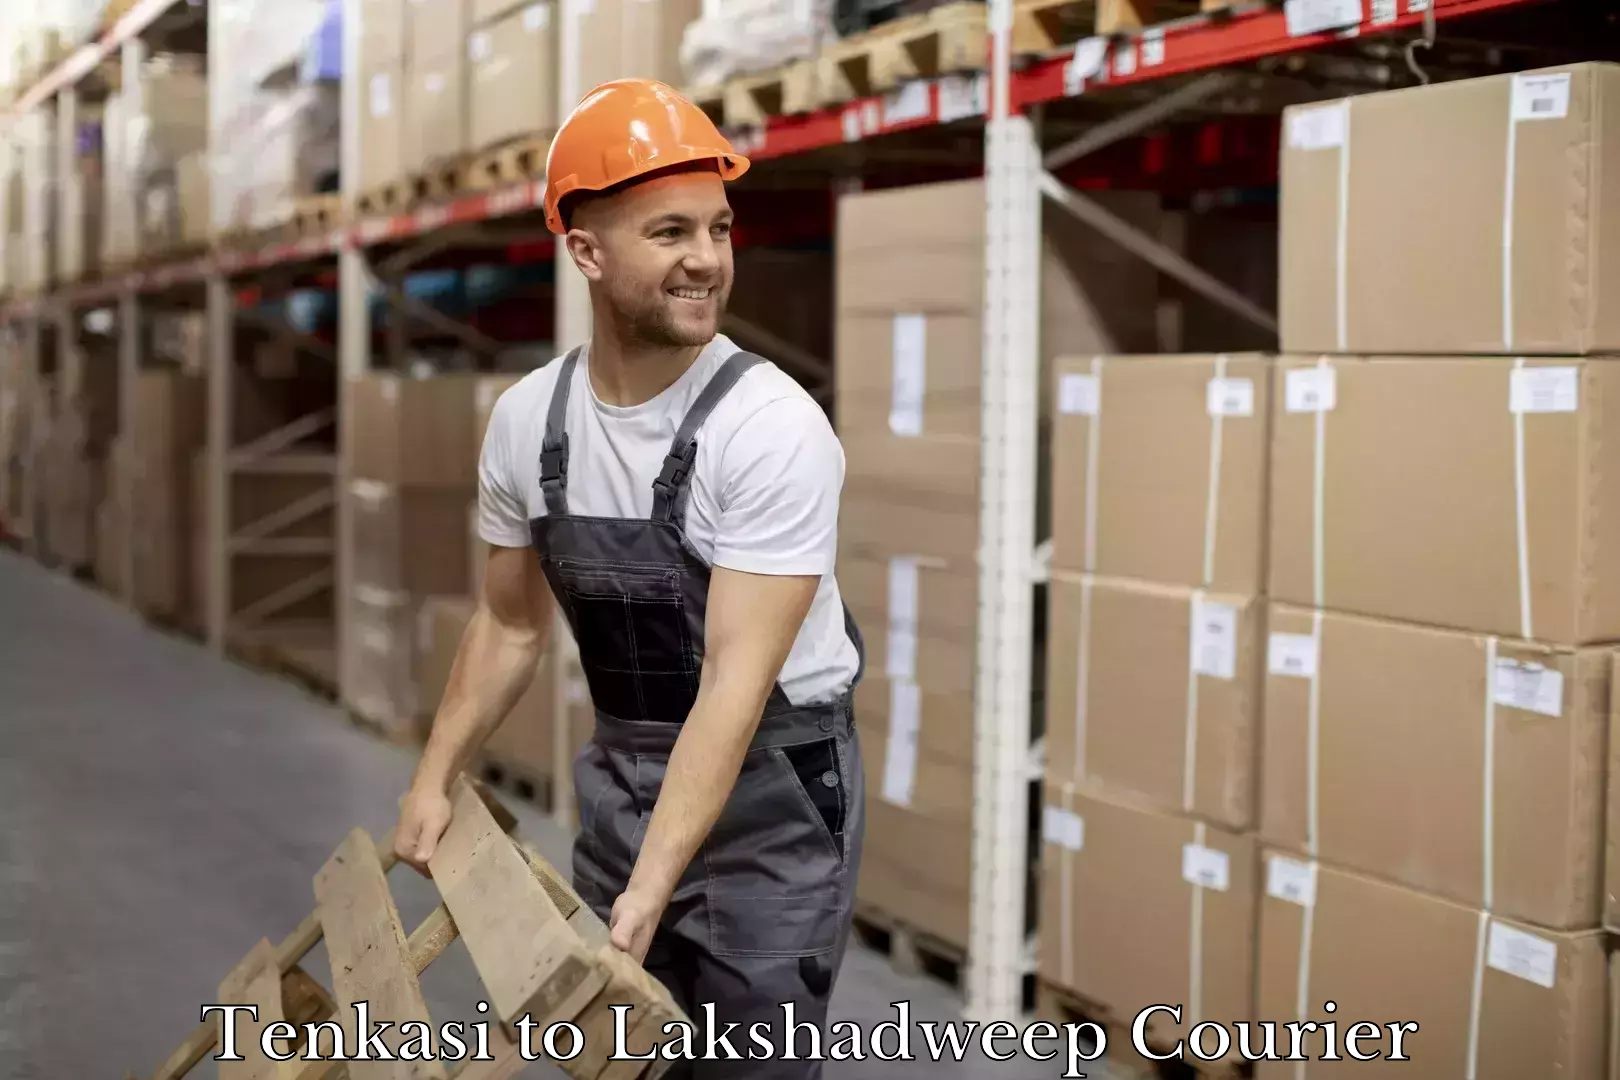 Professional courier handling Tenkasi to Lakshadweep